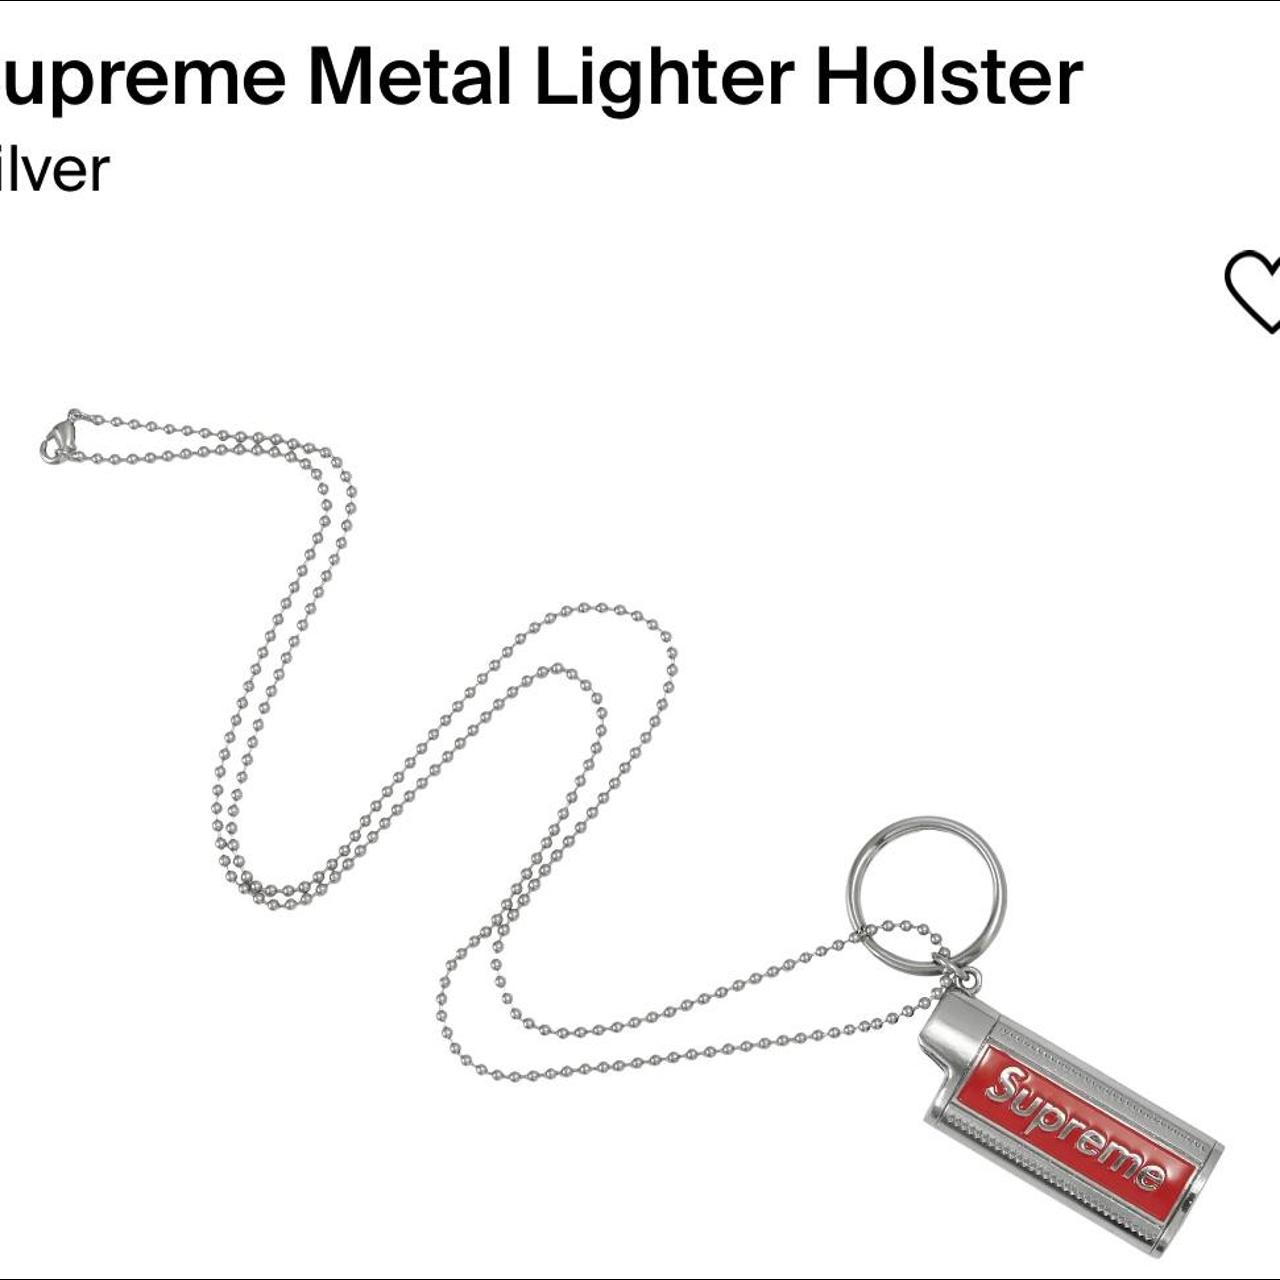 Waterproof Lighter Case Keychain - spring summer 2020 - Supreme